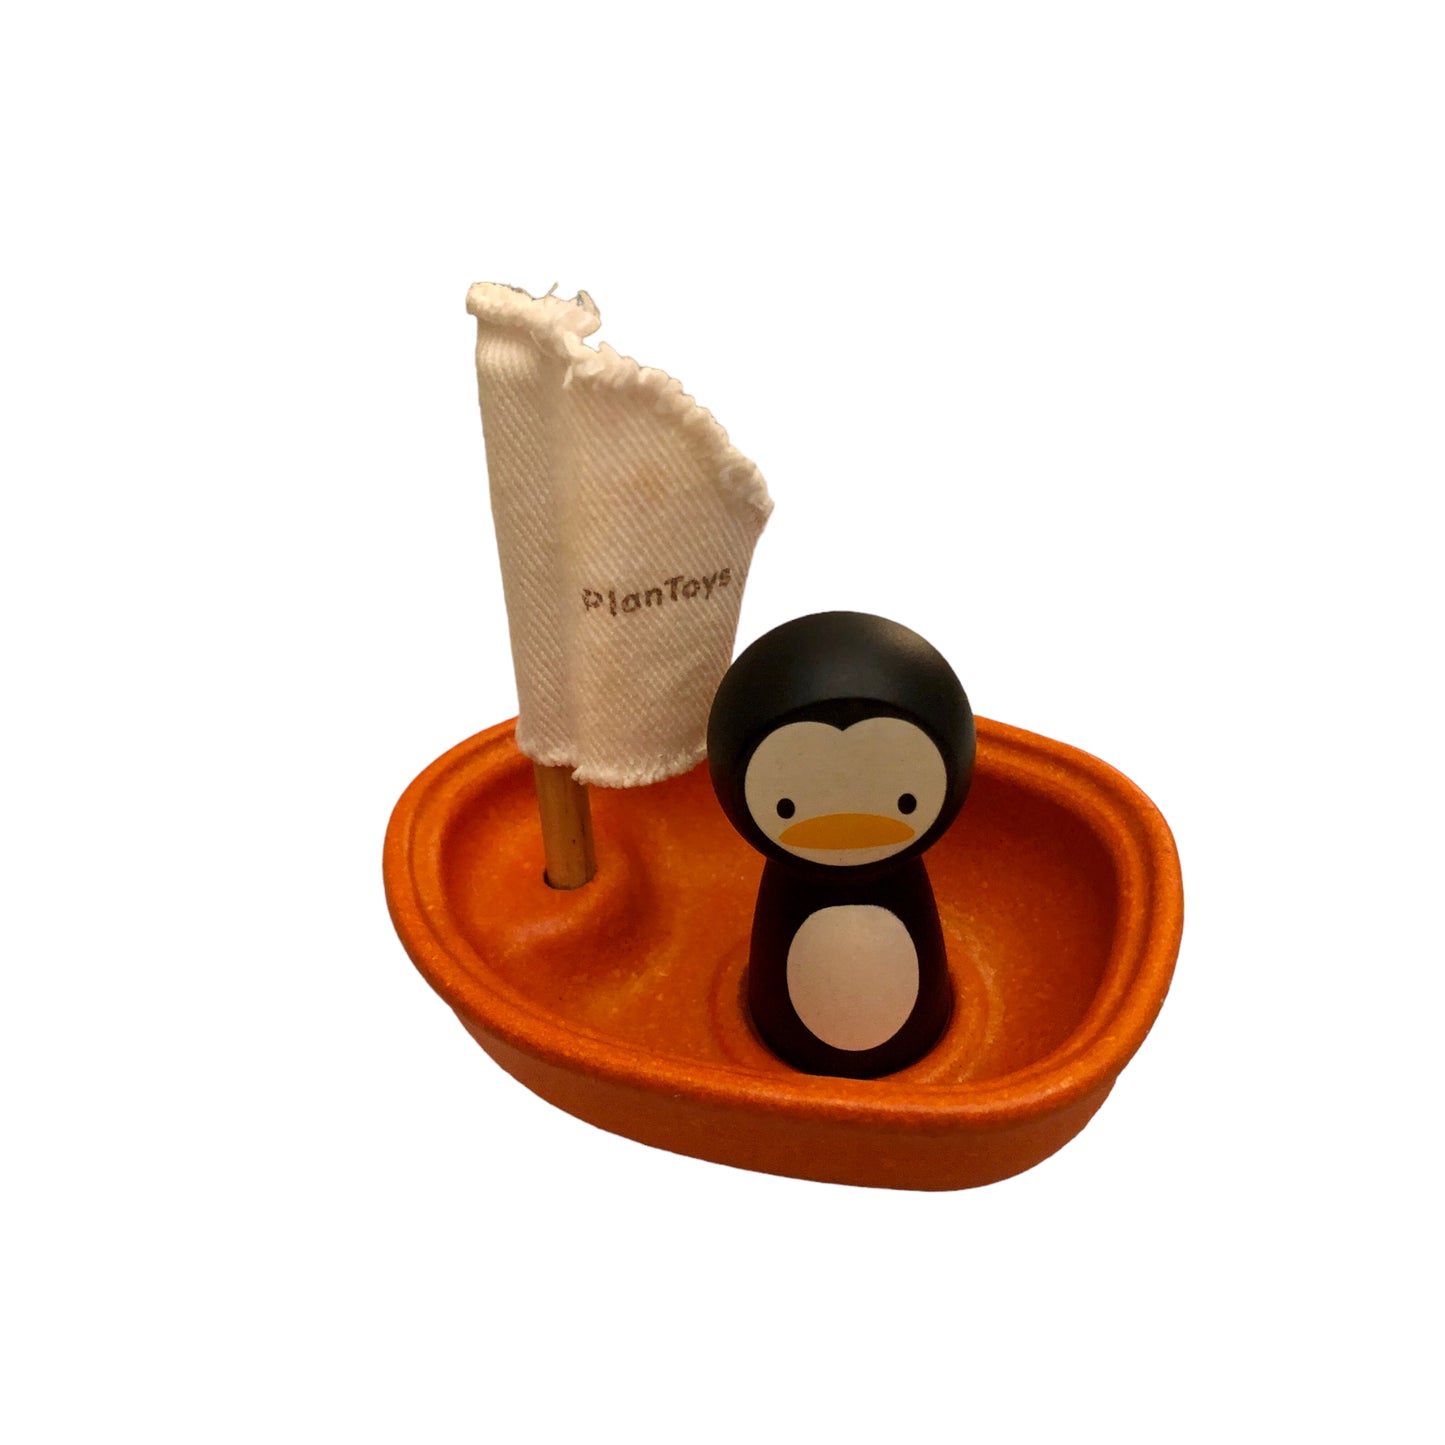 Plantoys Penguin - Bath toy